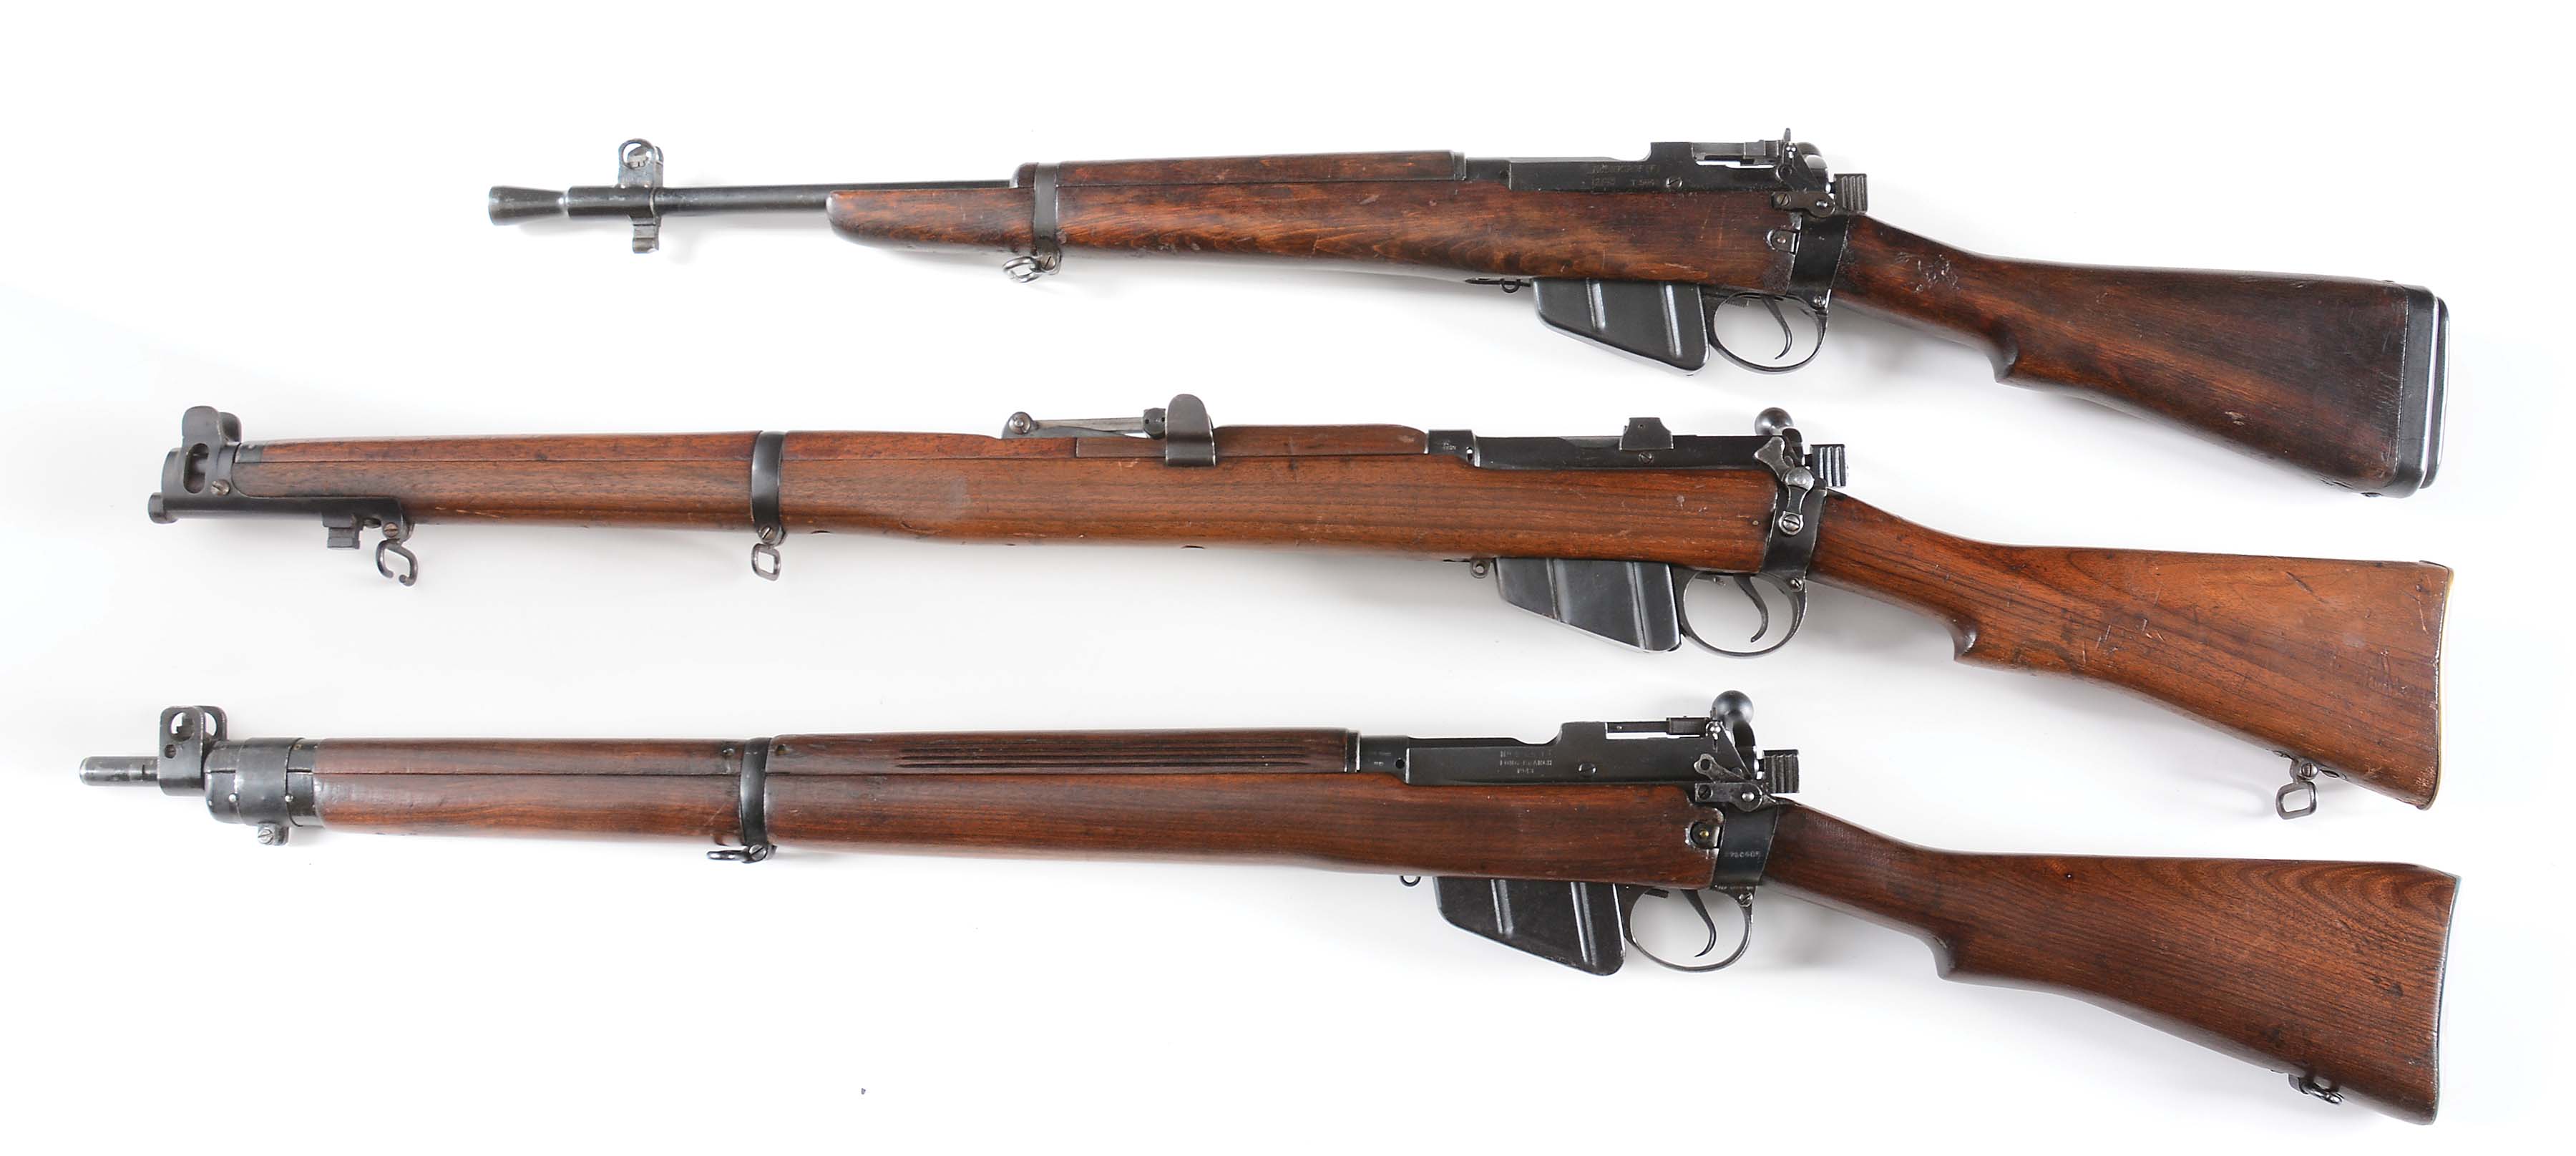 Lot Detail C Lot Of Three Three British World War Ii Era Rifles